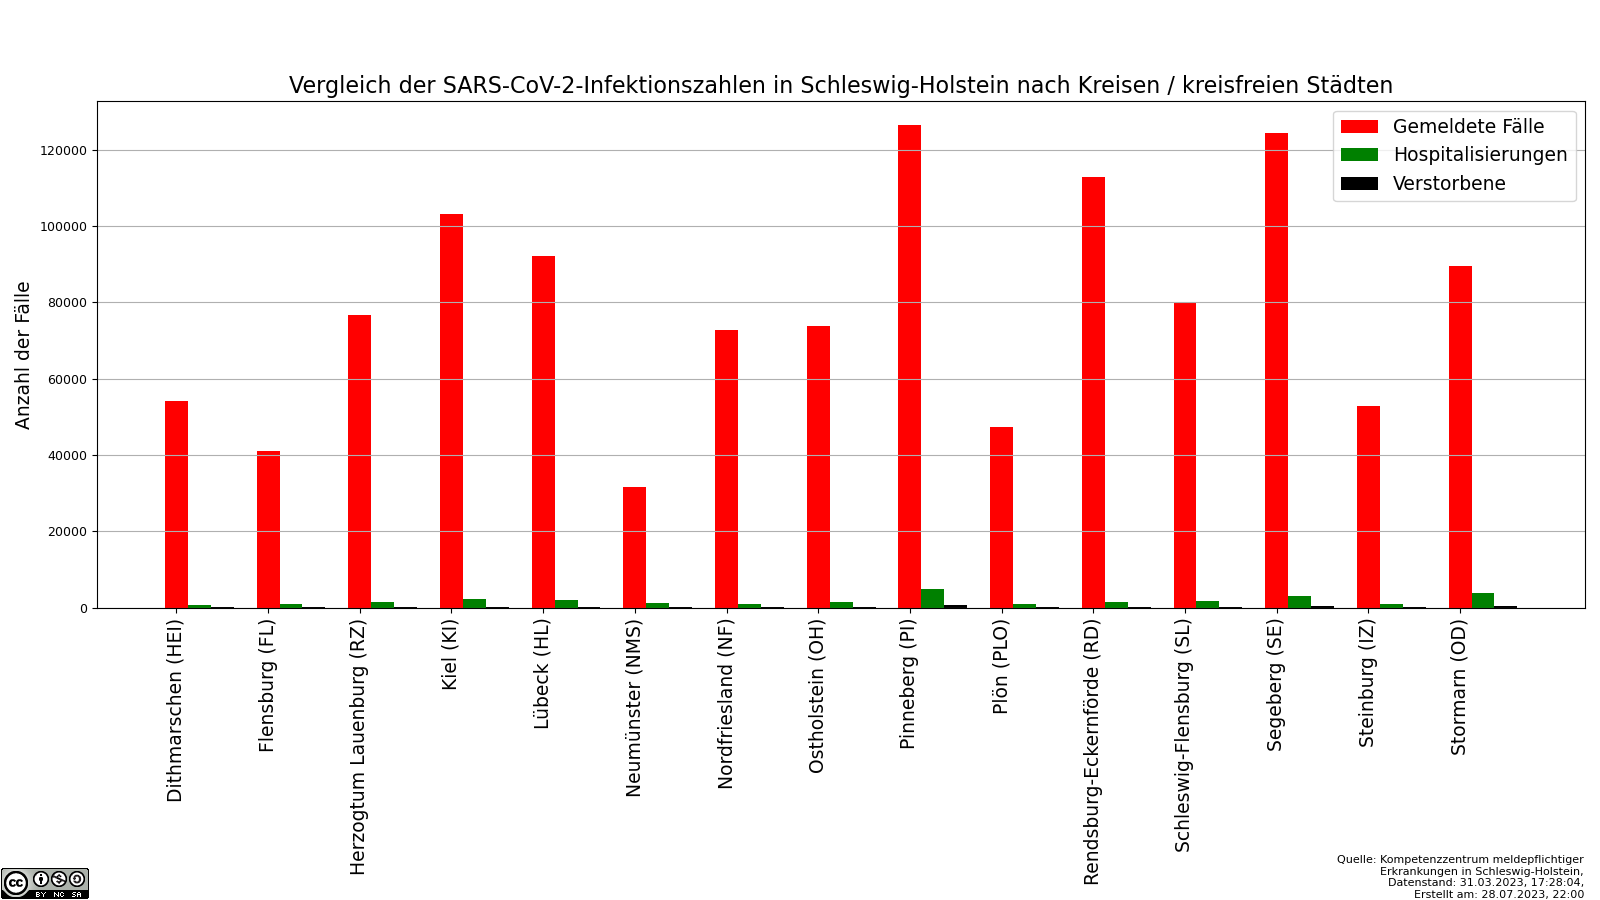 Vergleich der SARS-CoV-2-Infektionszahlen in Schleswig-Holstein nach Kreisen / kreisfreien Städten.